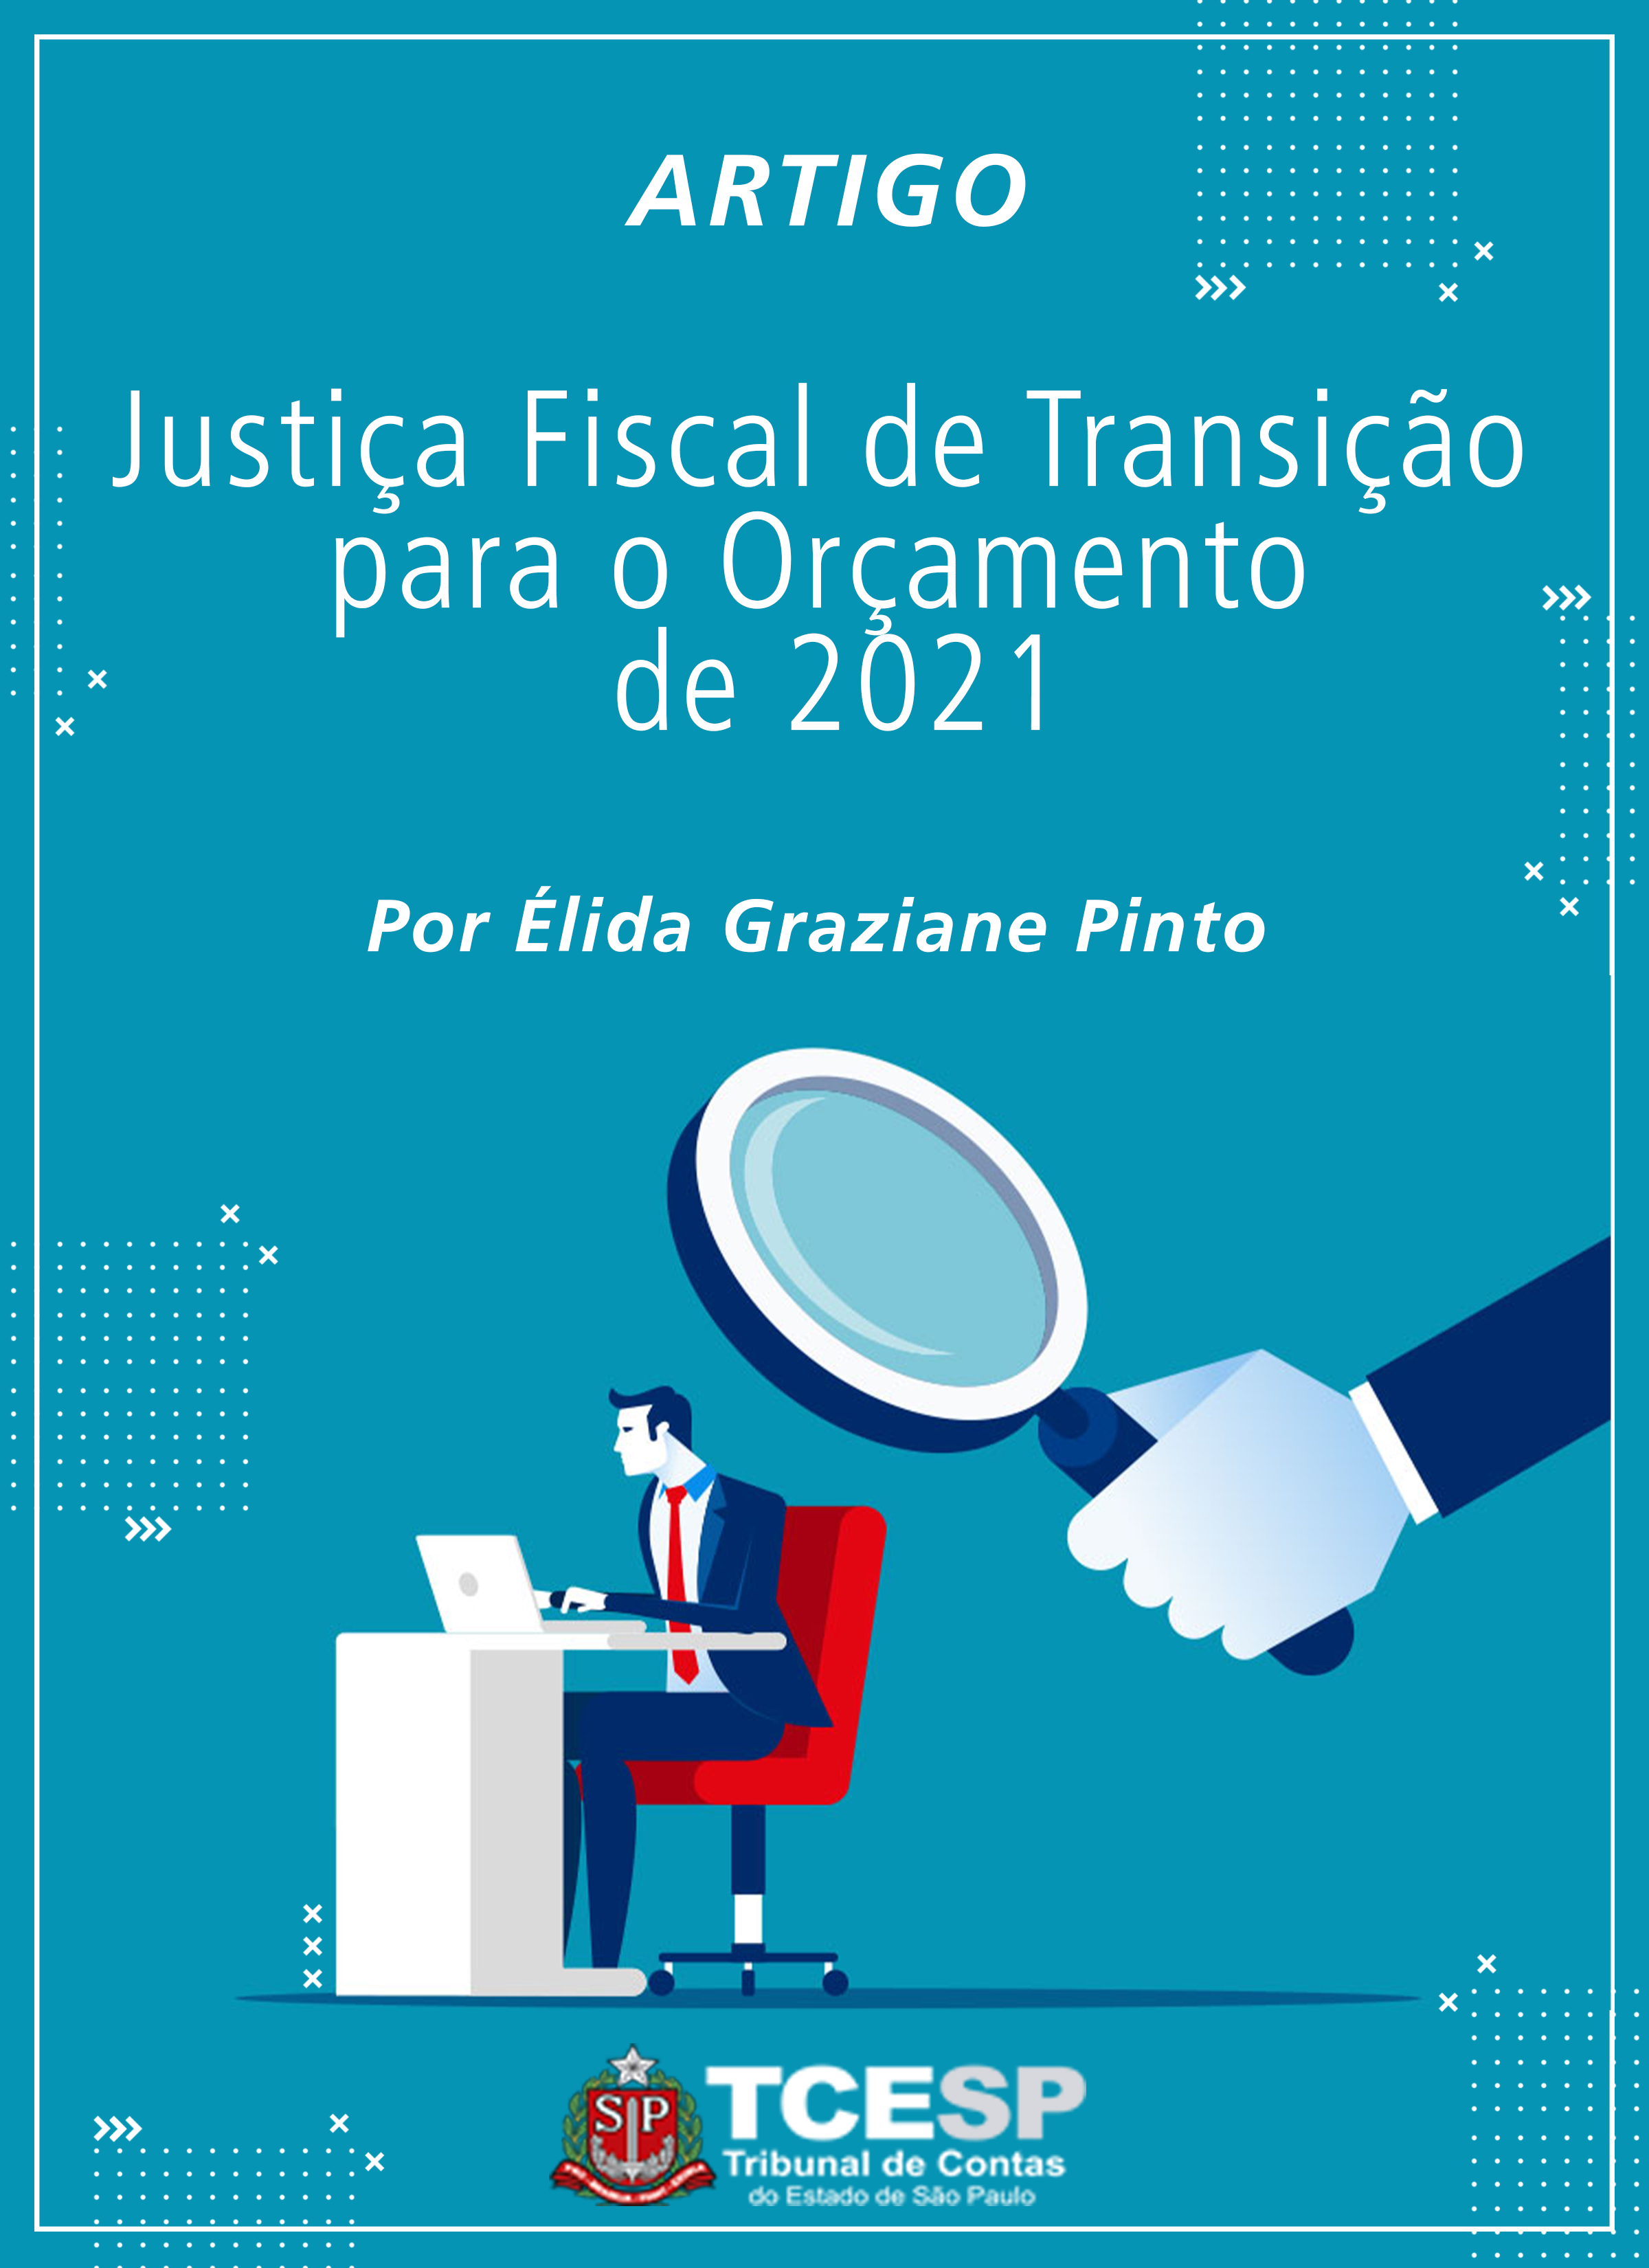 ARTIGO: Justiça Fiscal de Transição para o Orçamento de 2021